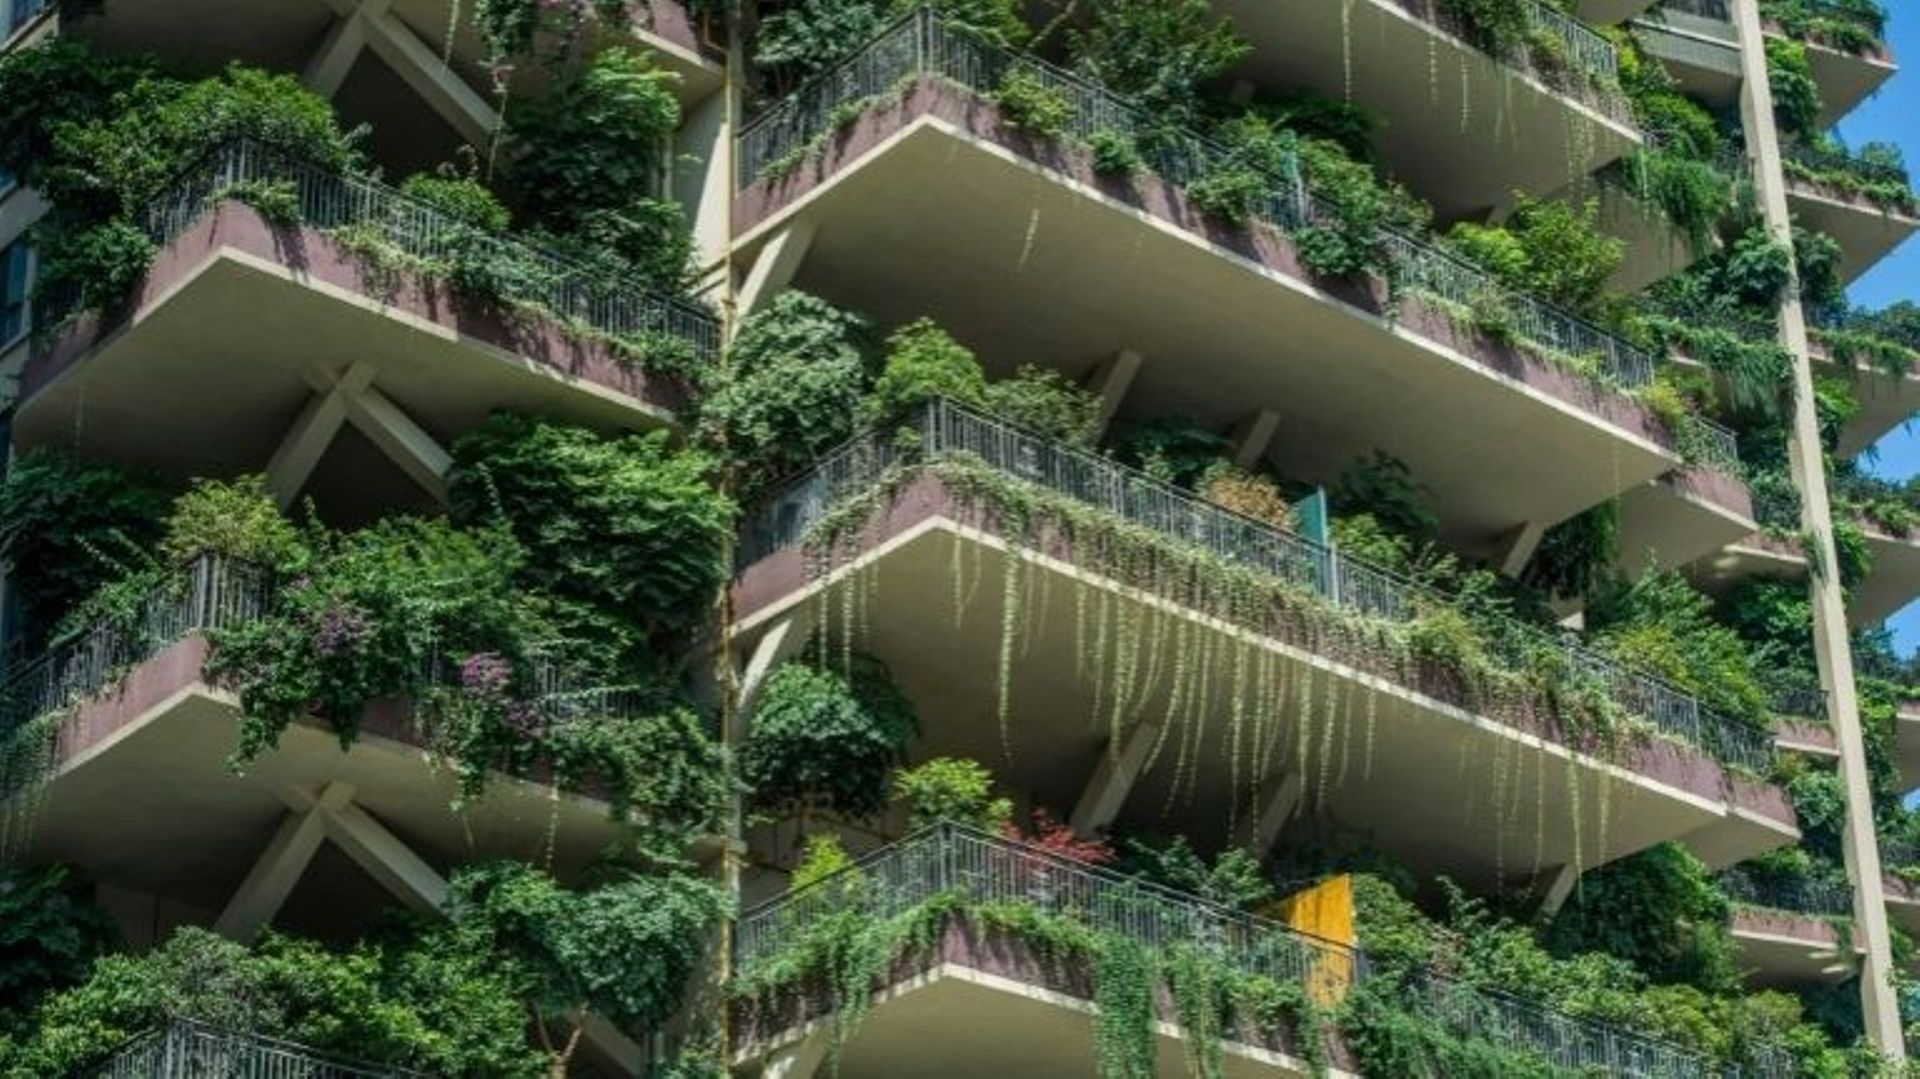 Des bâtiments résidentiels "végétalisés" à Chengdu, dans la province chinoise du Sichuan, le 3 août 2020 .